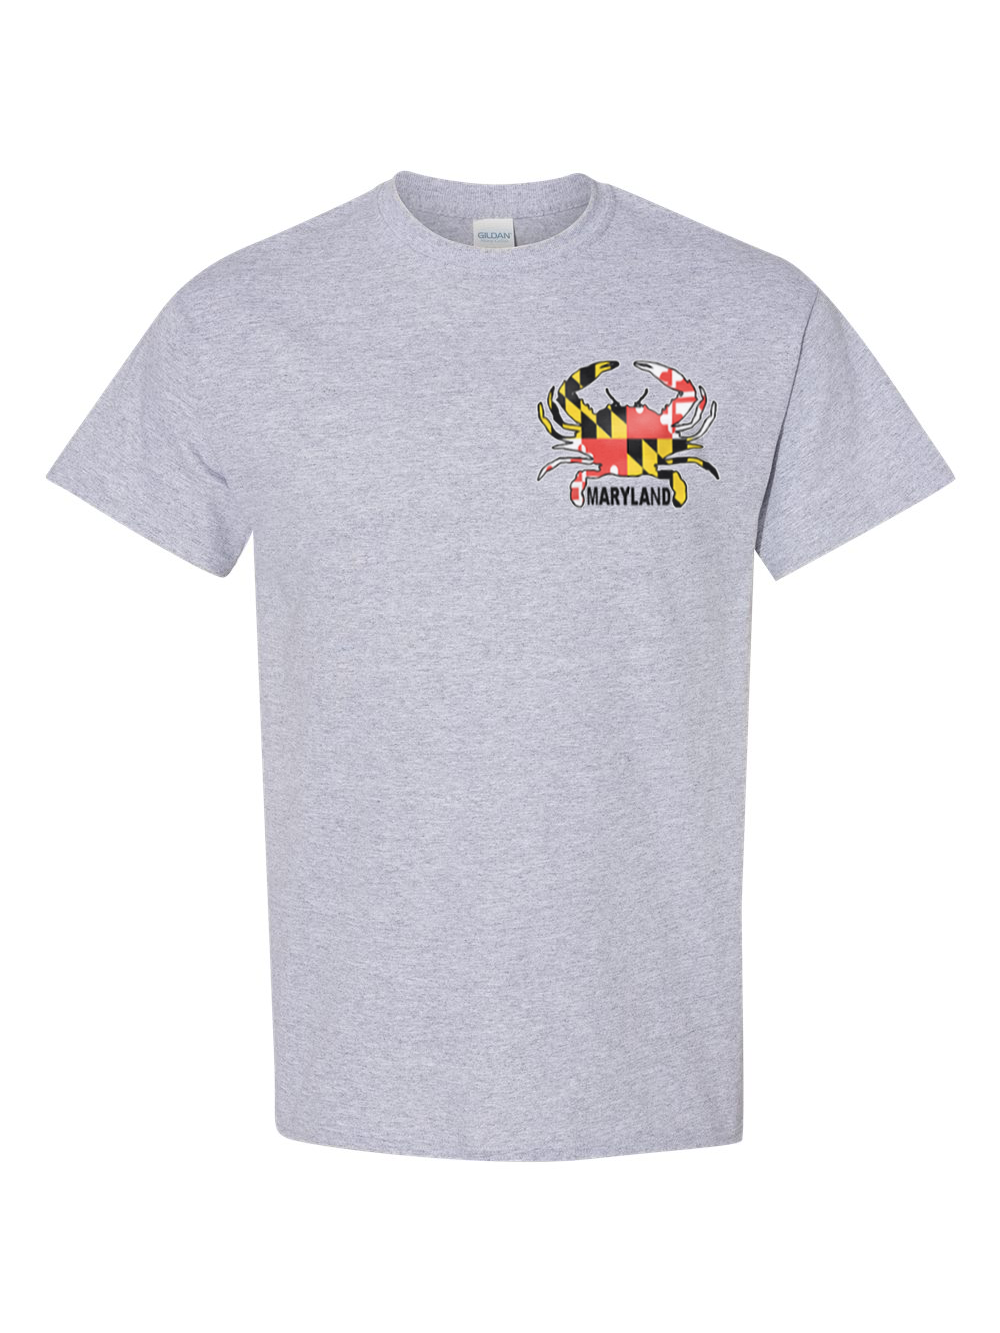 Maryland Small Crab T-Shirt (Grey)